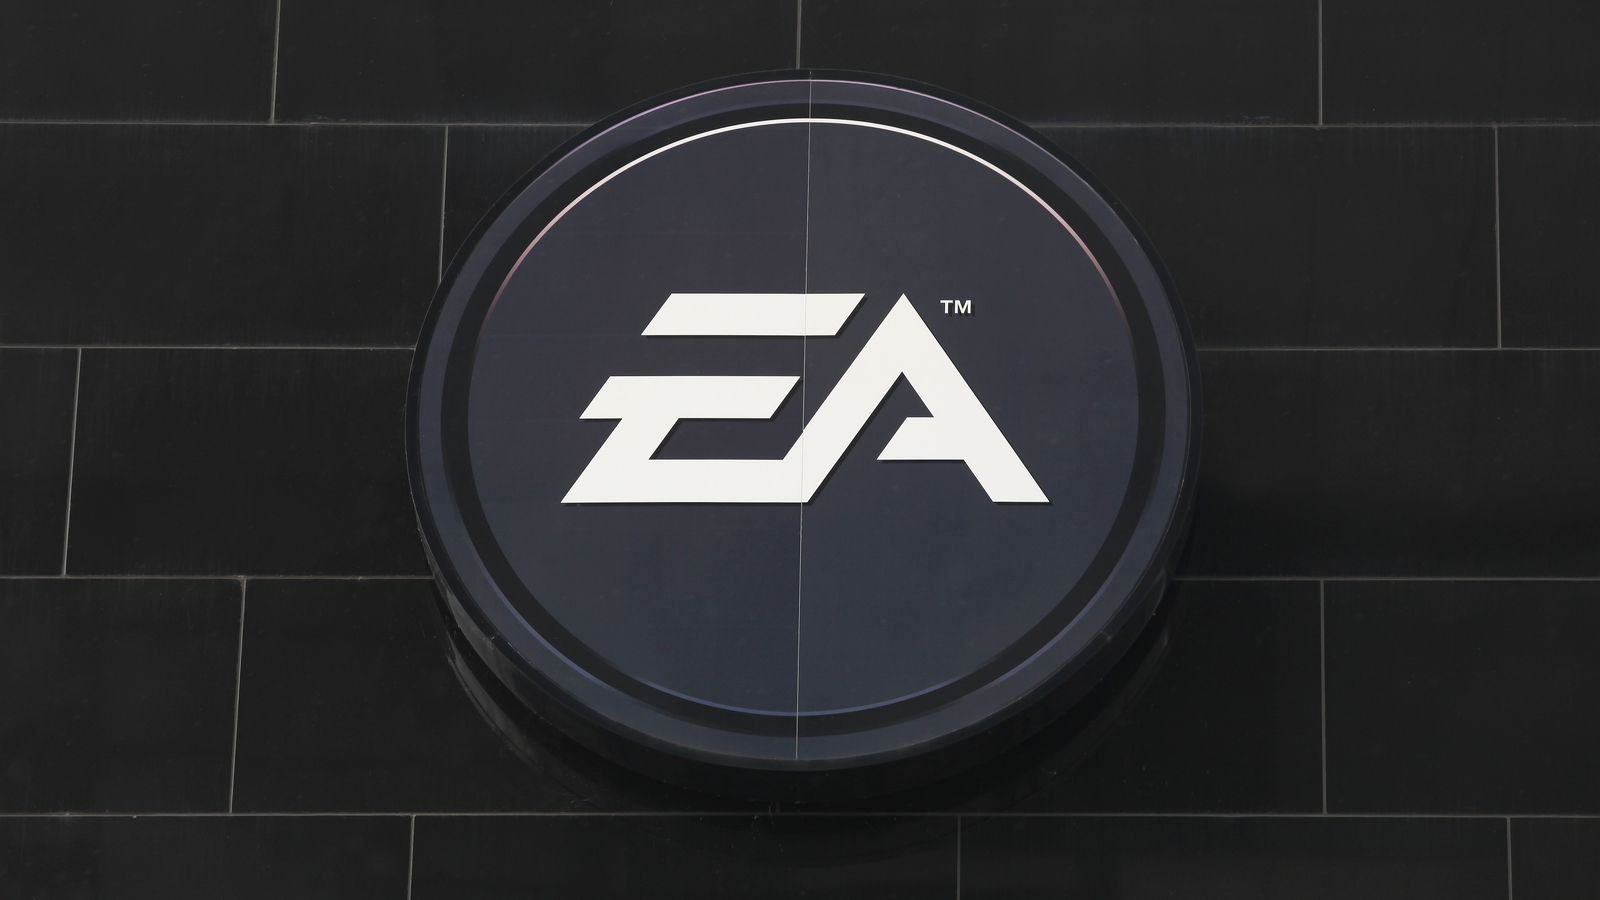 Electronic Arts piraté : le code source de FIFA 21 et du moteur Frostbite dérobés